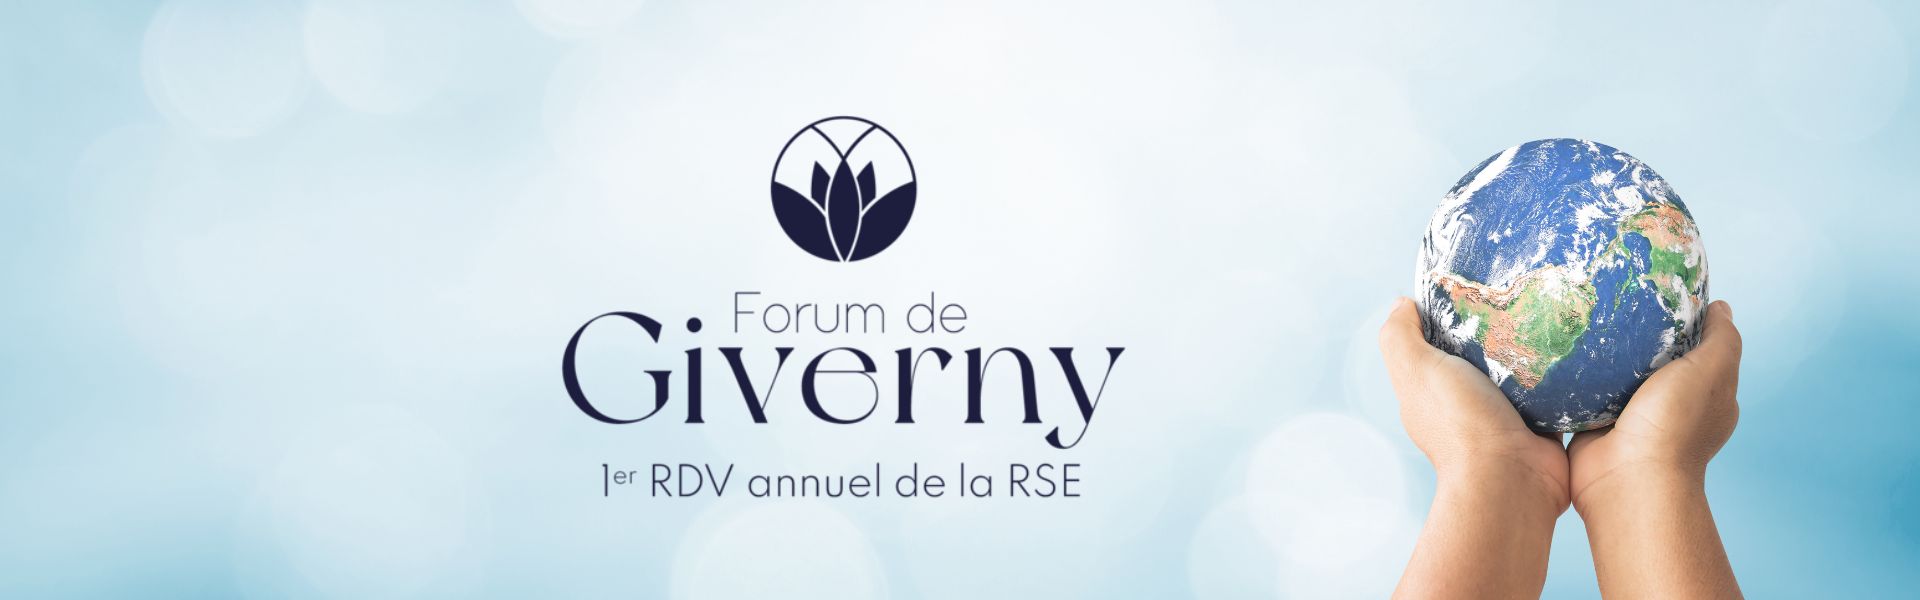 Article L’ILV partenaire du Forum de Giverny, grand rendez-vous de la RSE